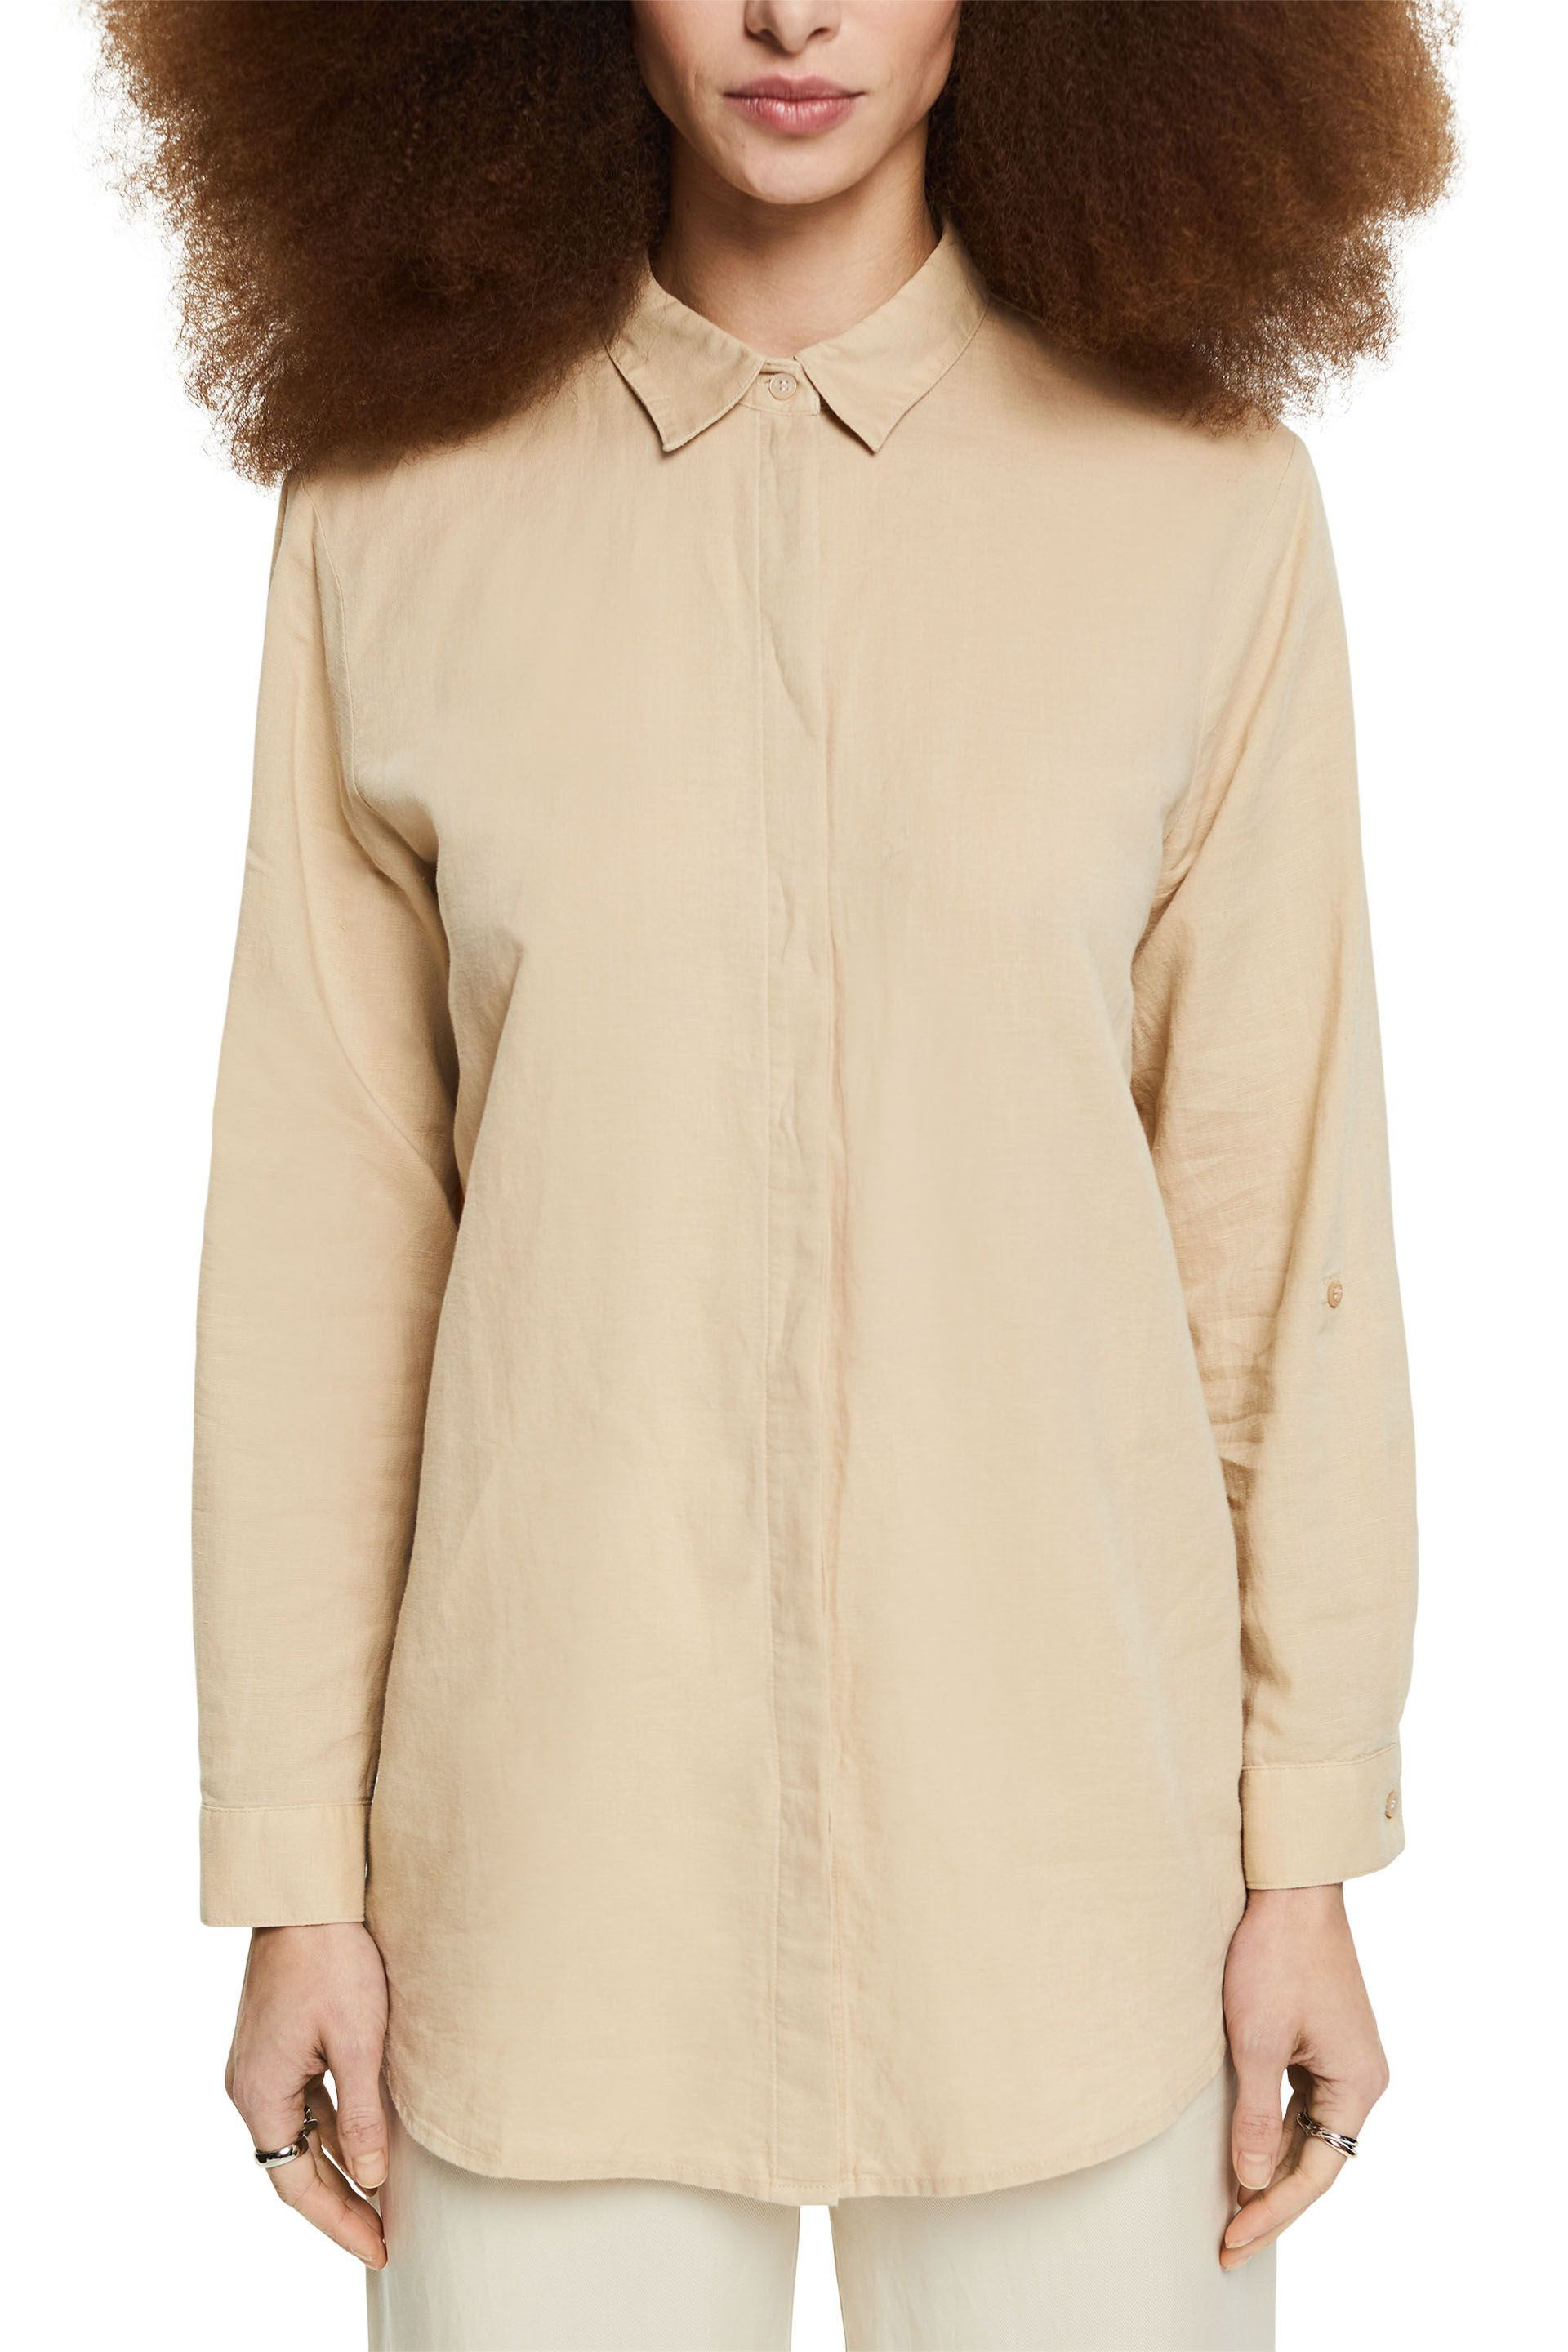 Linen blend shirt, Beige, large image number 1